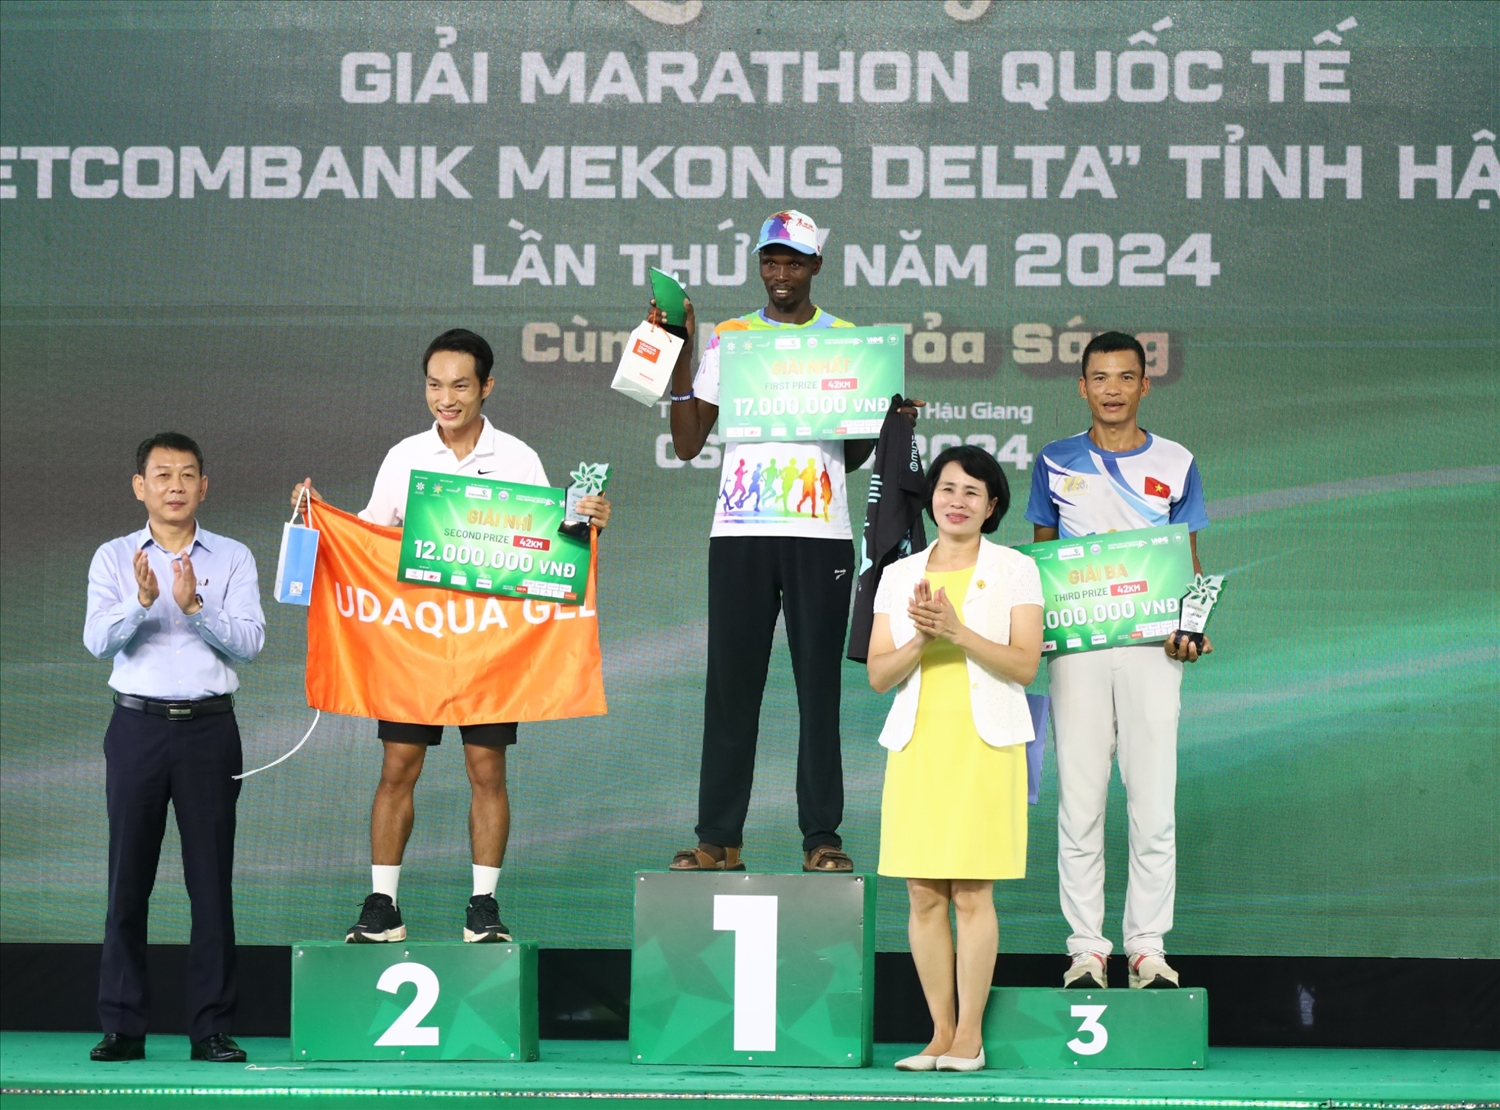 Đại diện Ban tổ chức Giải marathon quốc tế “Vietcombank Mekong delta” tỉnh Hậu Giang lần thứ V, năm 2024, trao giải đến 3 vận động viên nam xuất sắc nhất nội dung 42km 